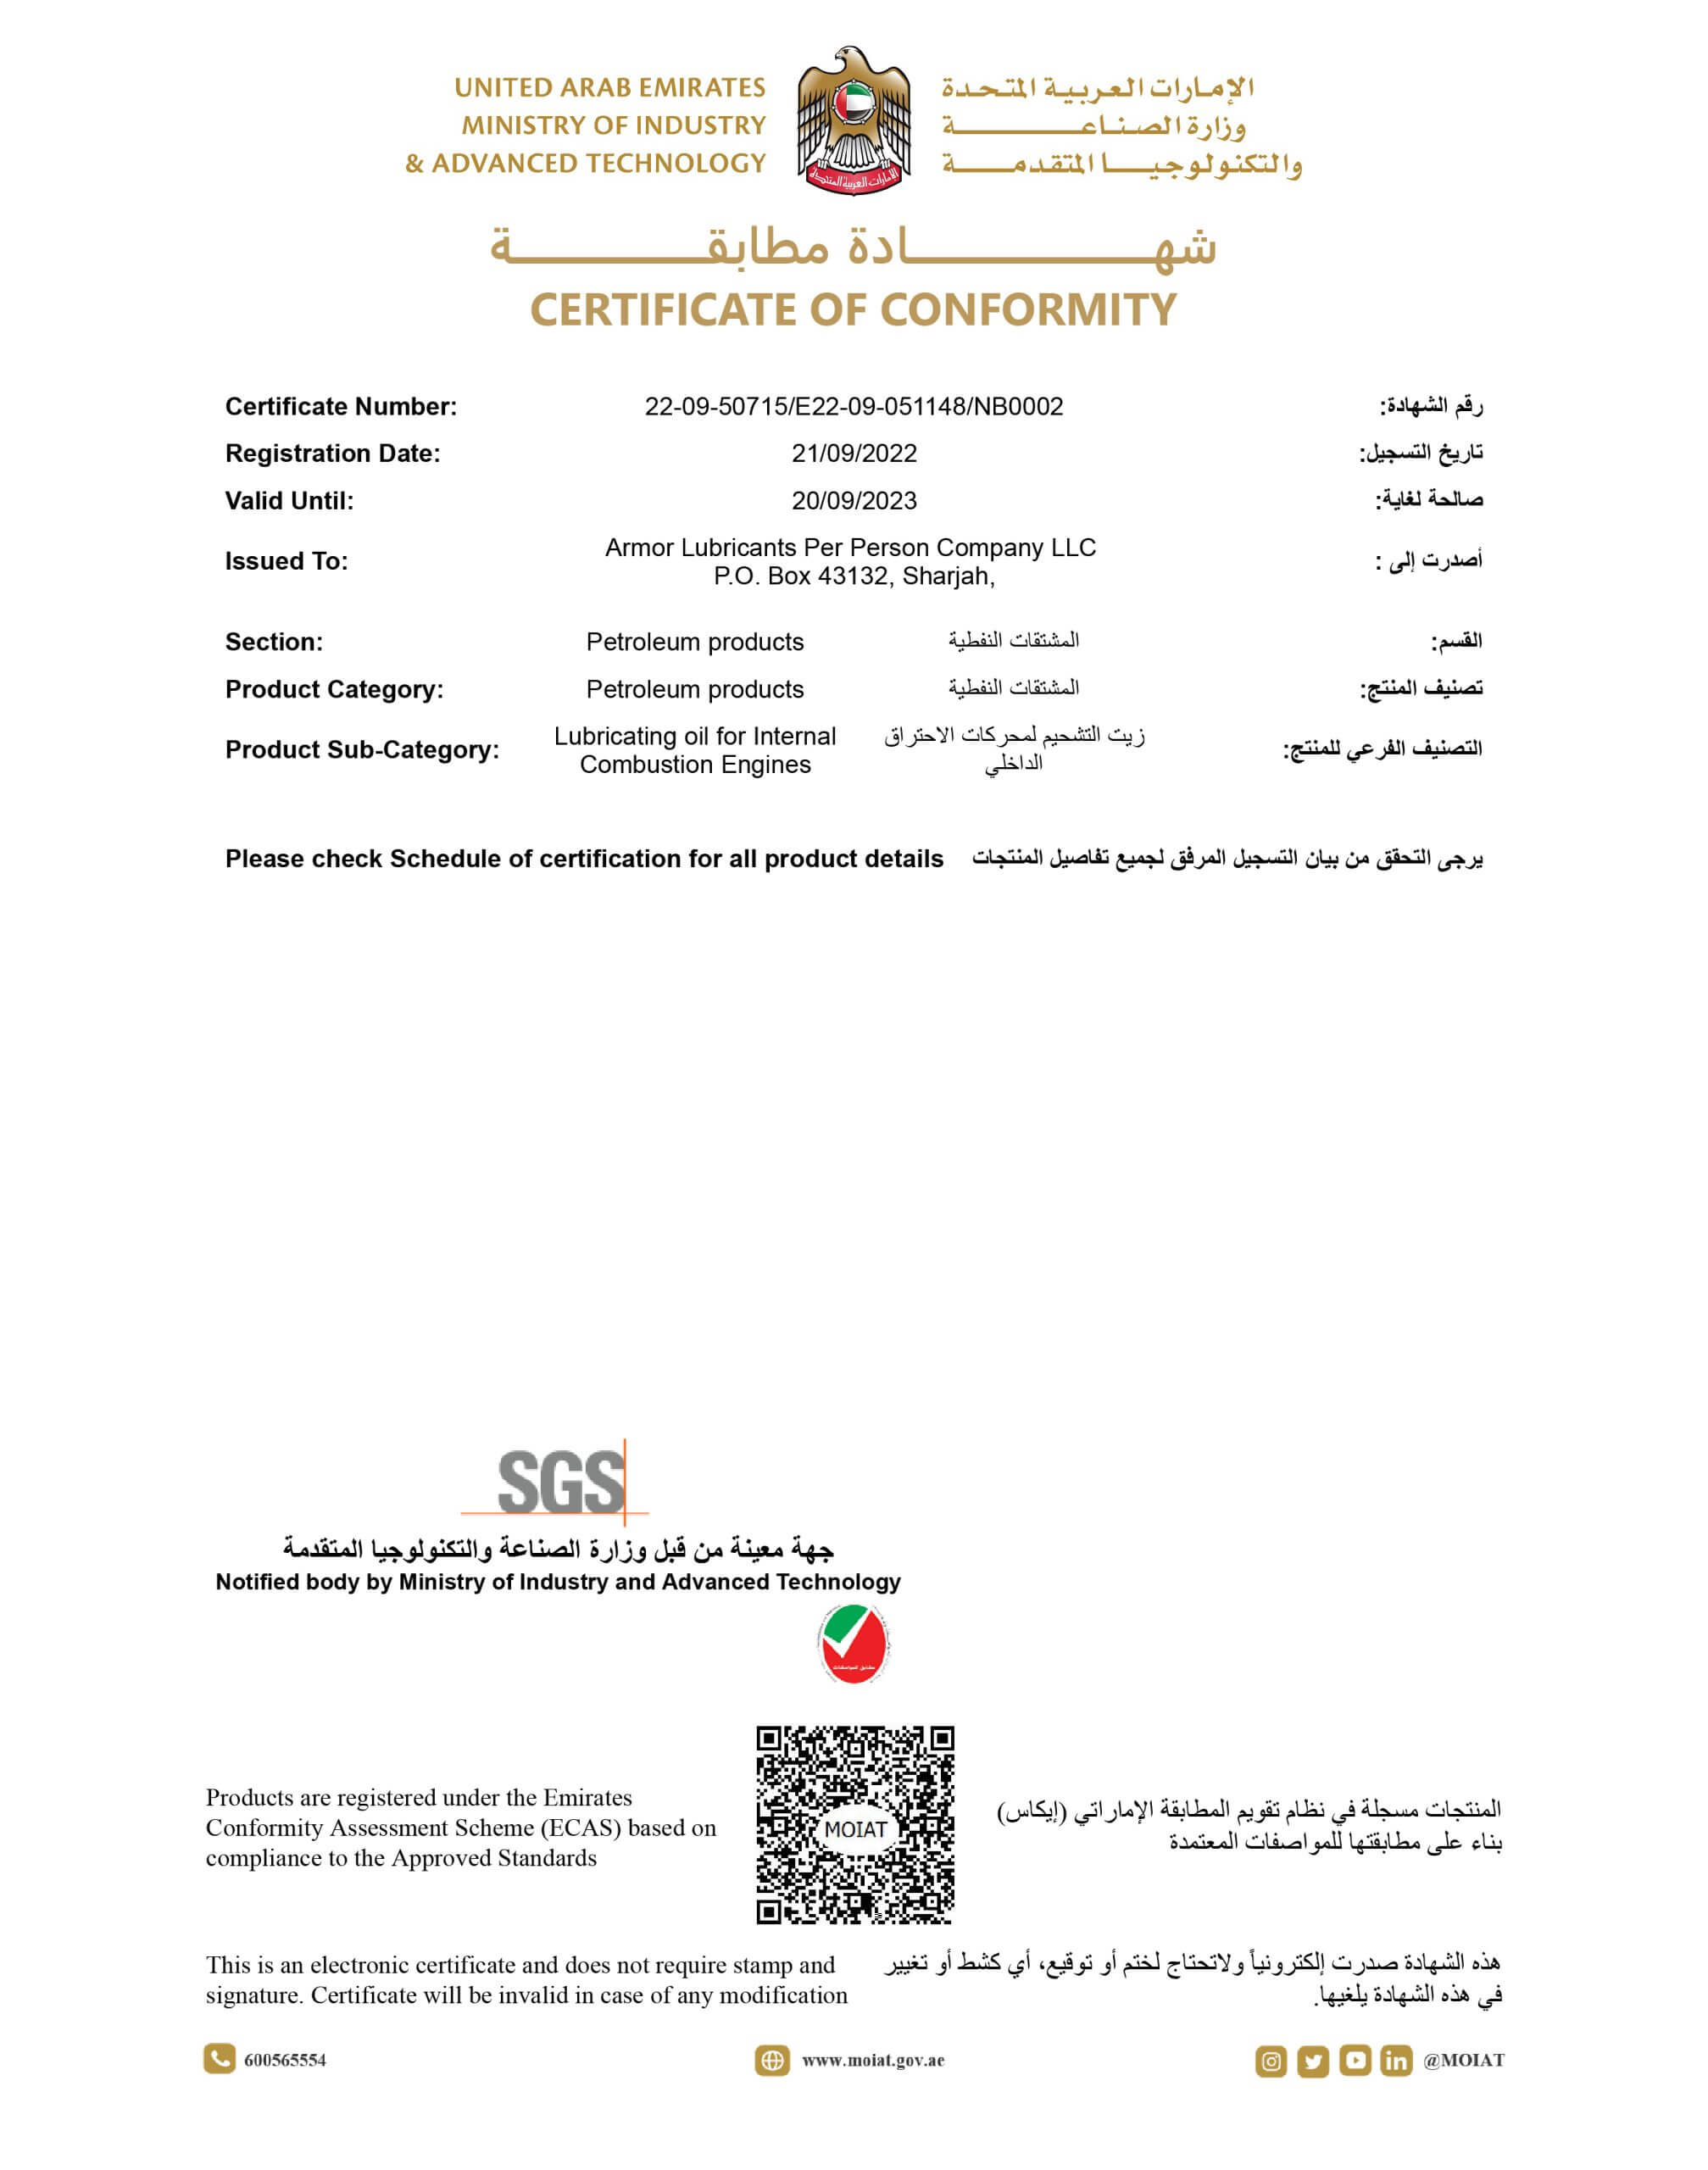 Armor Lubricants ESMA Certificate of Conformity